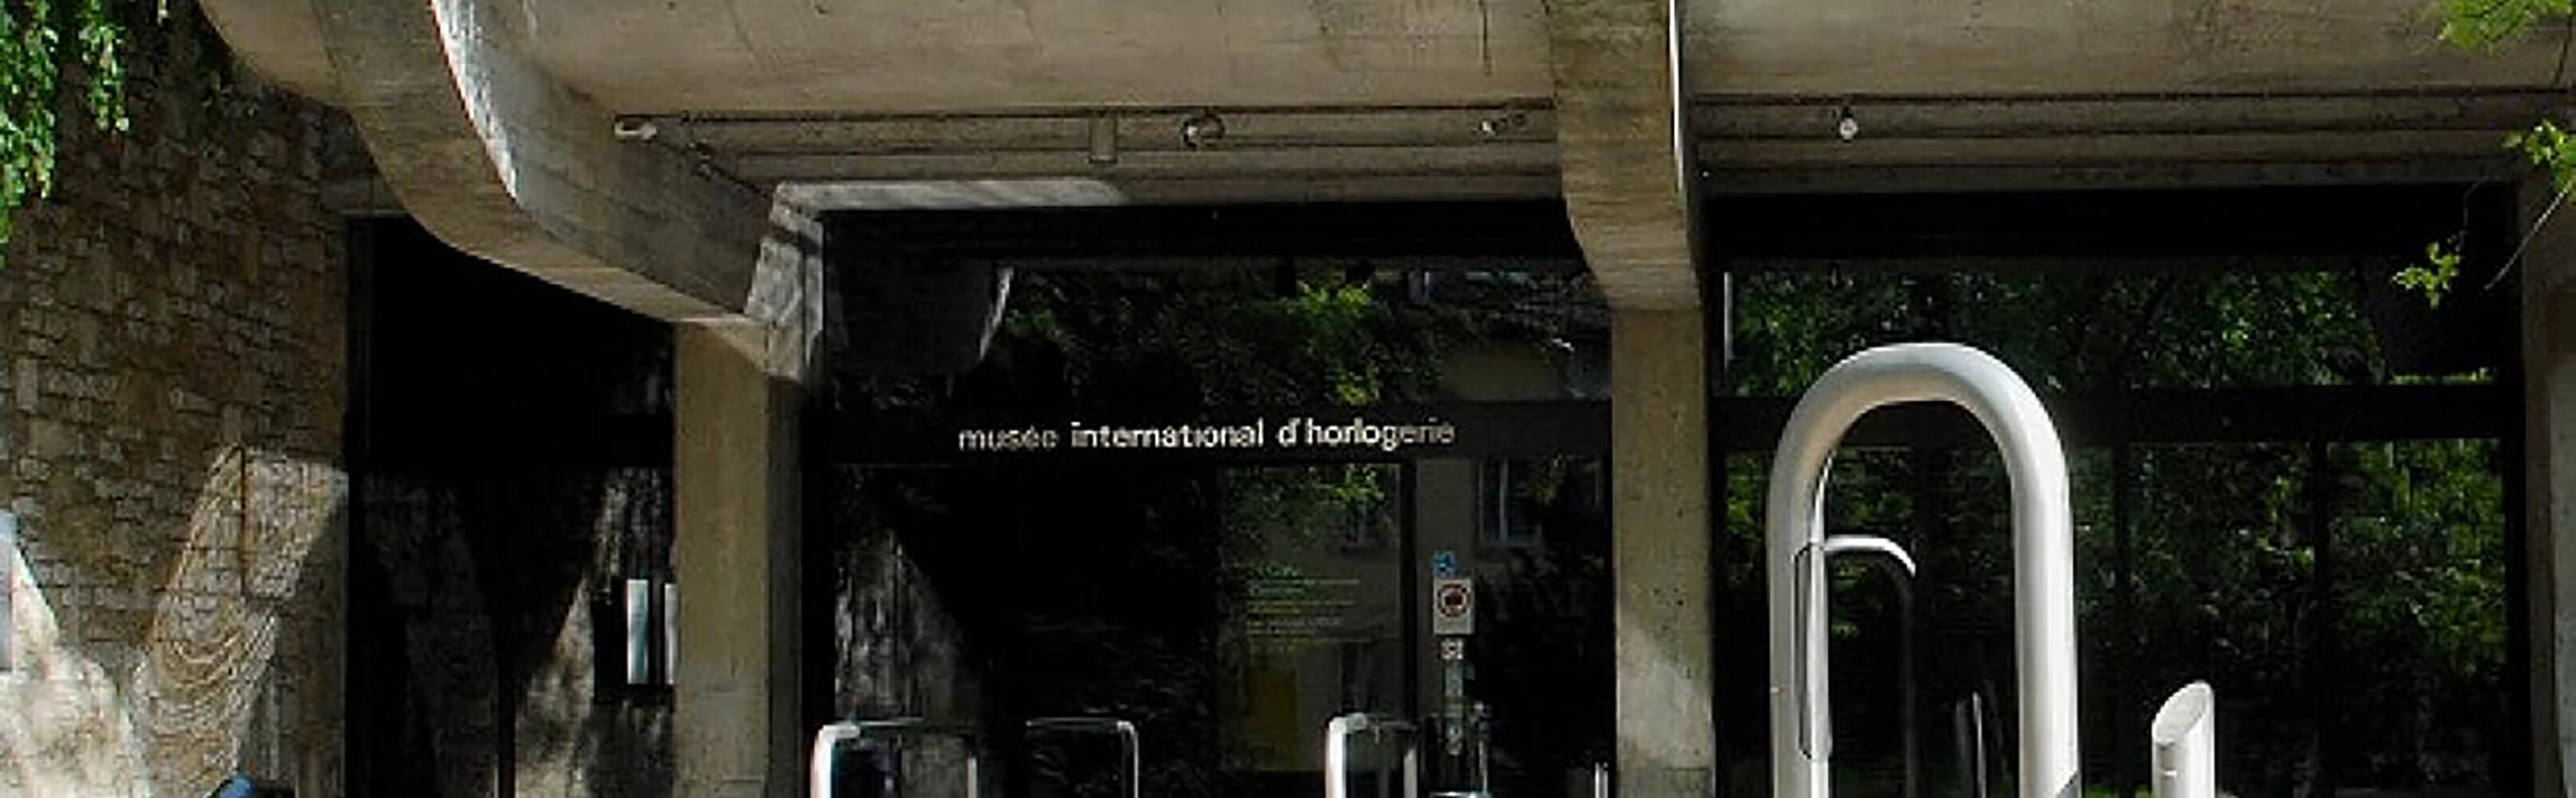 Musée international d'horlogerie La Chaux-de-Fonds 1